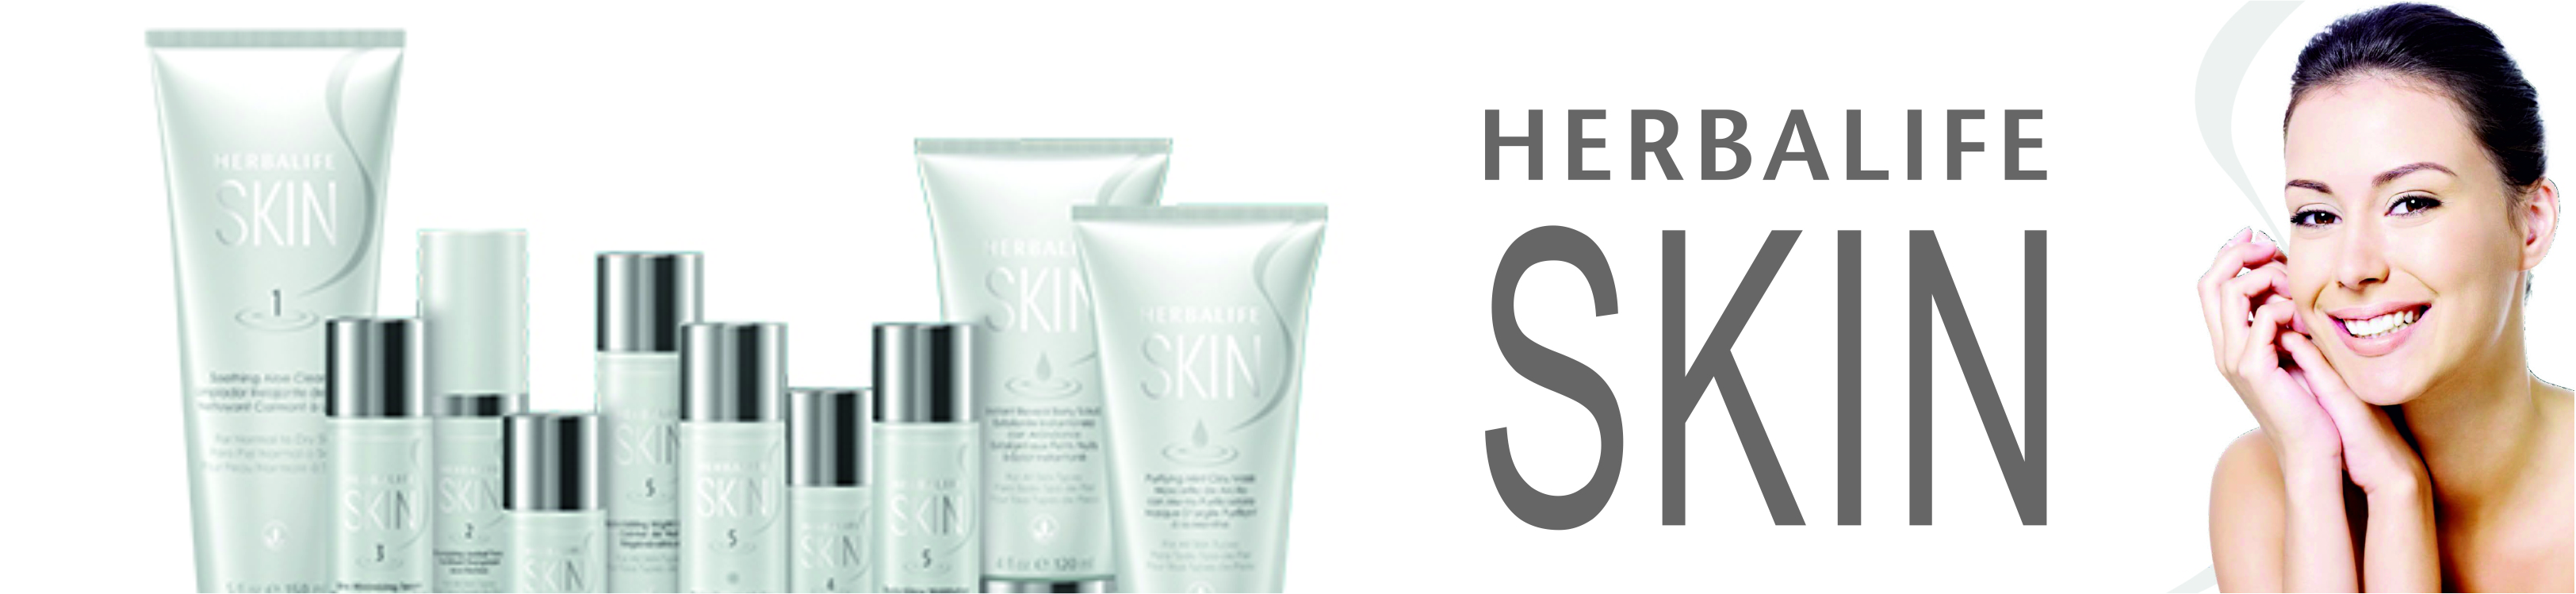 Herbalife Skin Uiterlijke verzorging